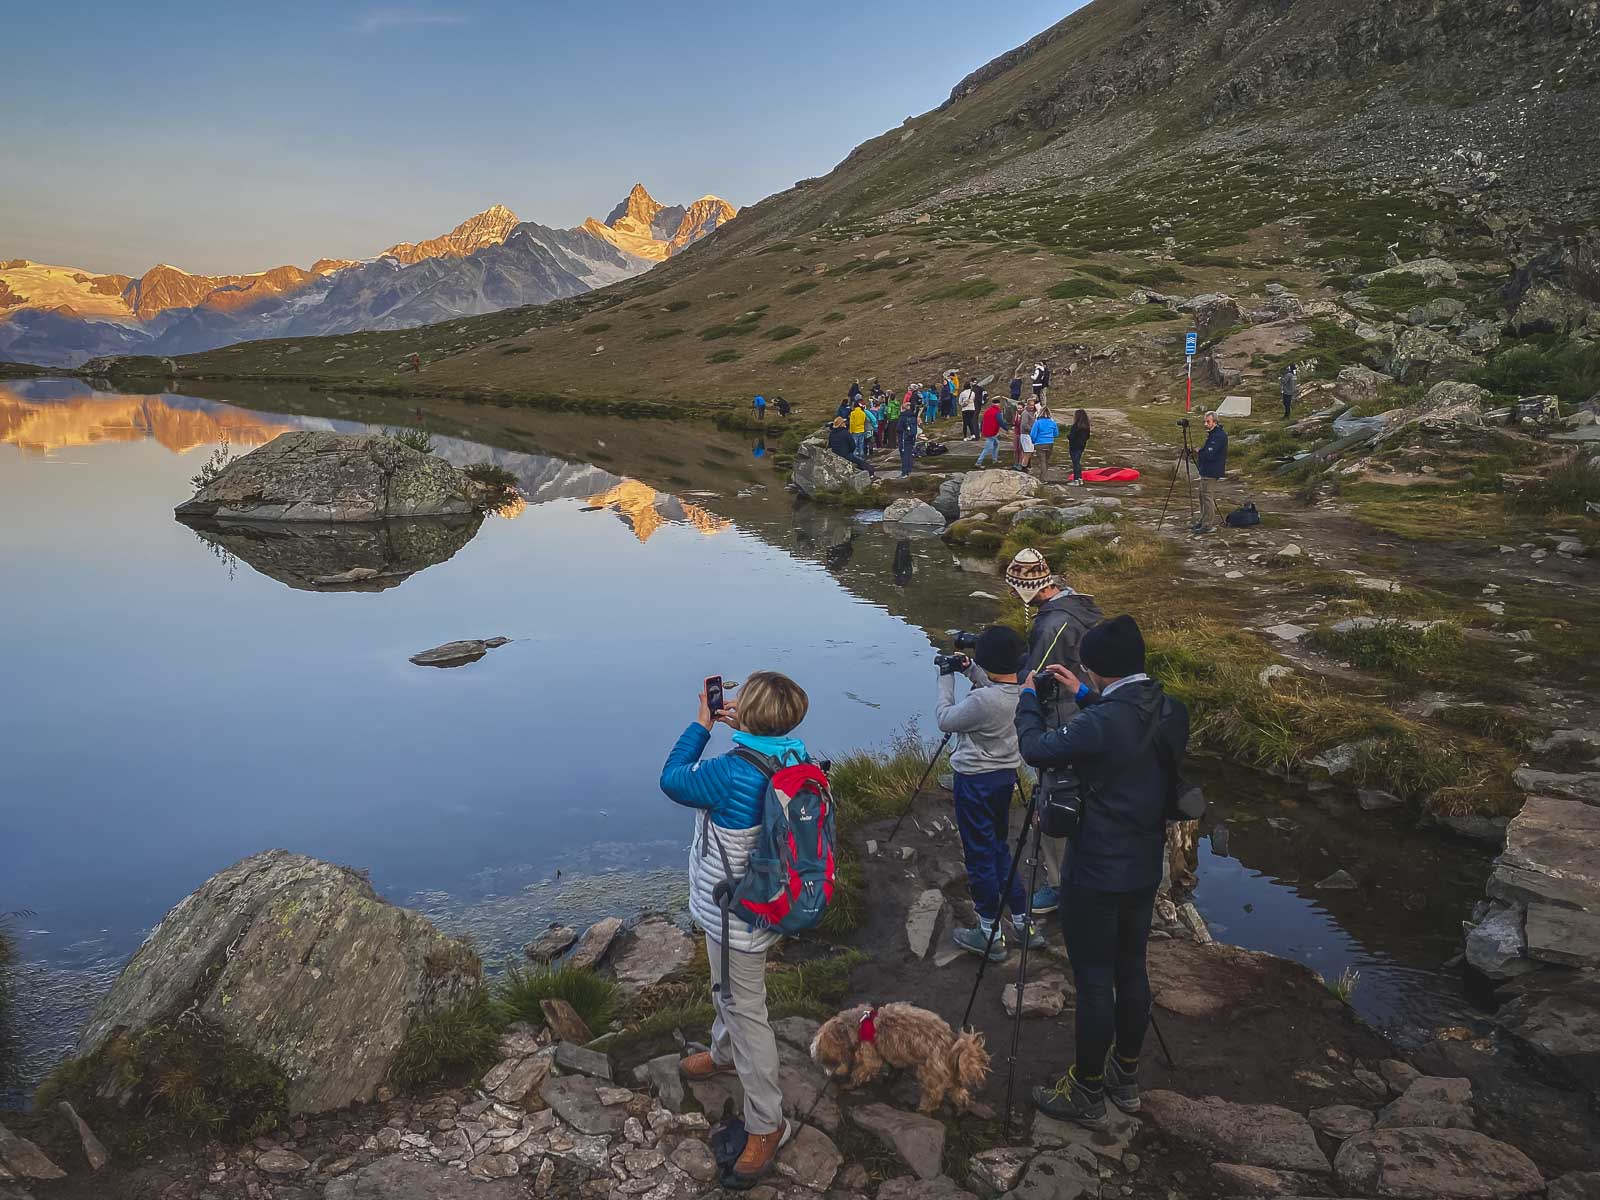 Crowds at Stellisee for sunrise in Zermatt